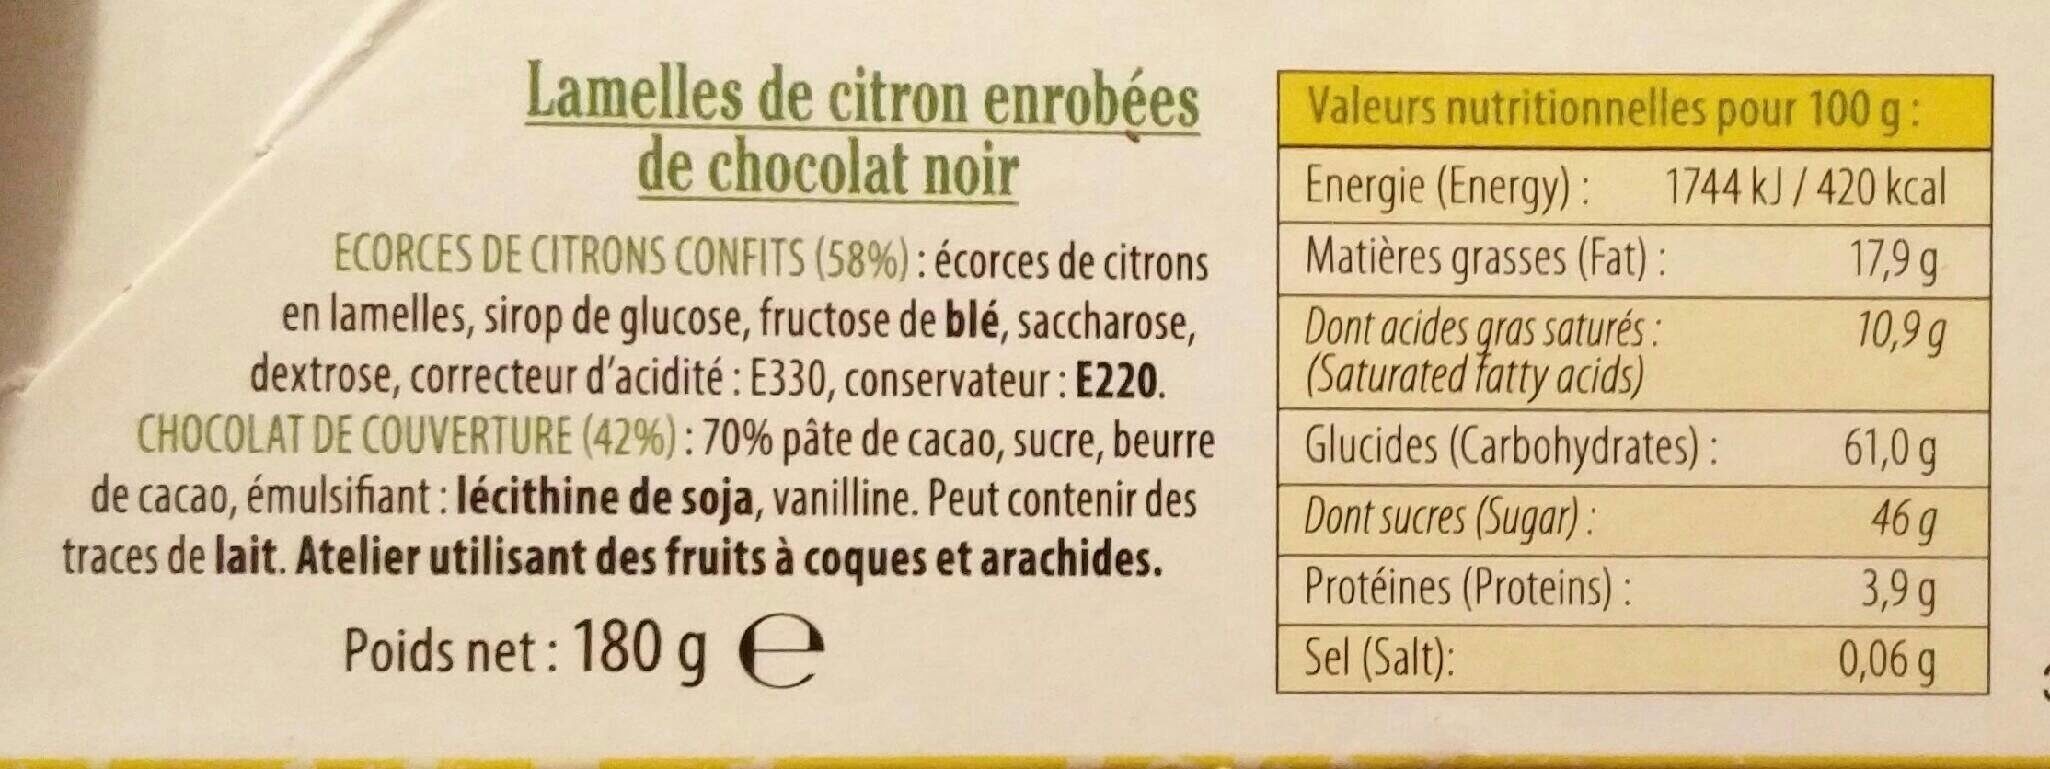 Lamelles de Citron enrobées de chocolat noir - Nutrition facts - fr